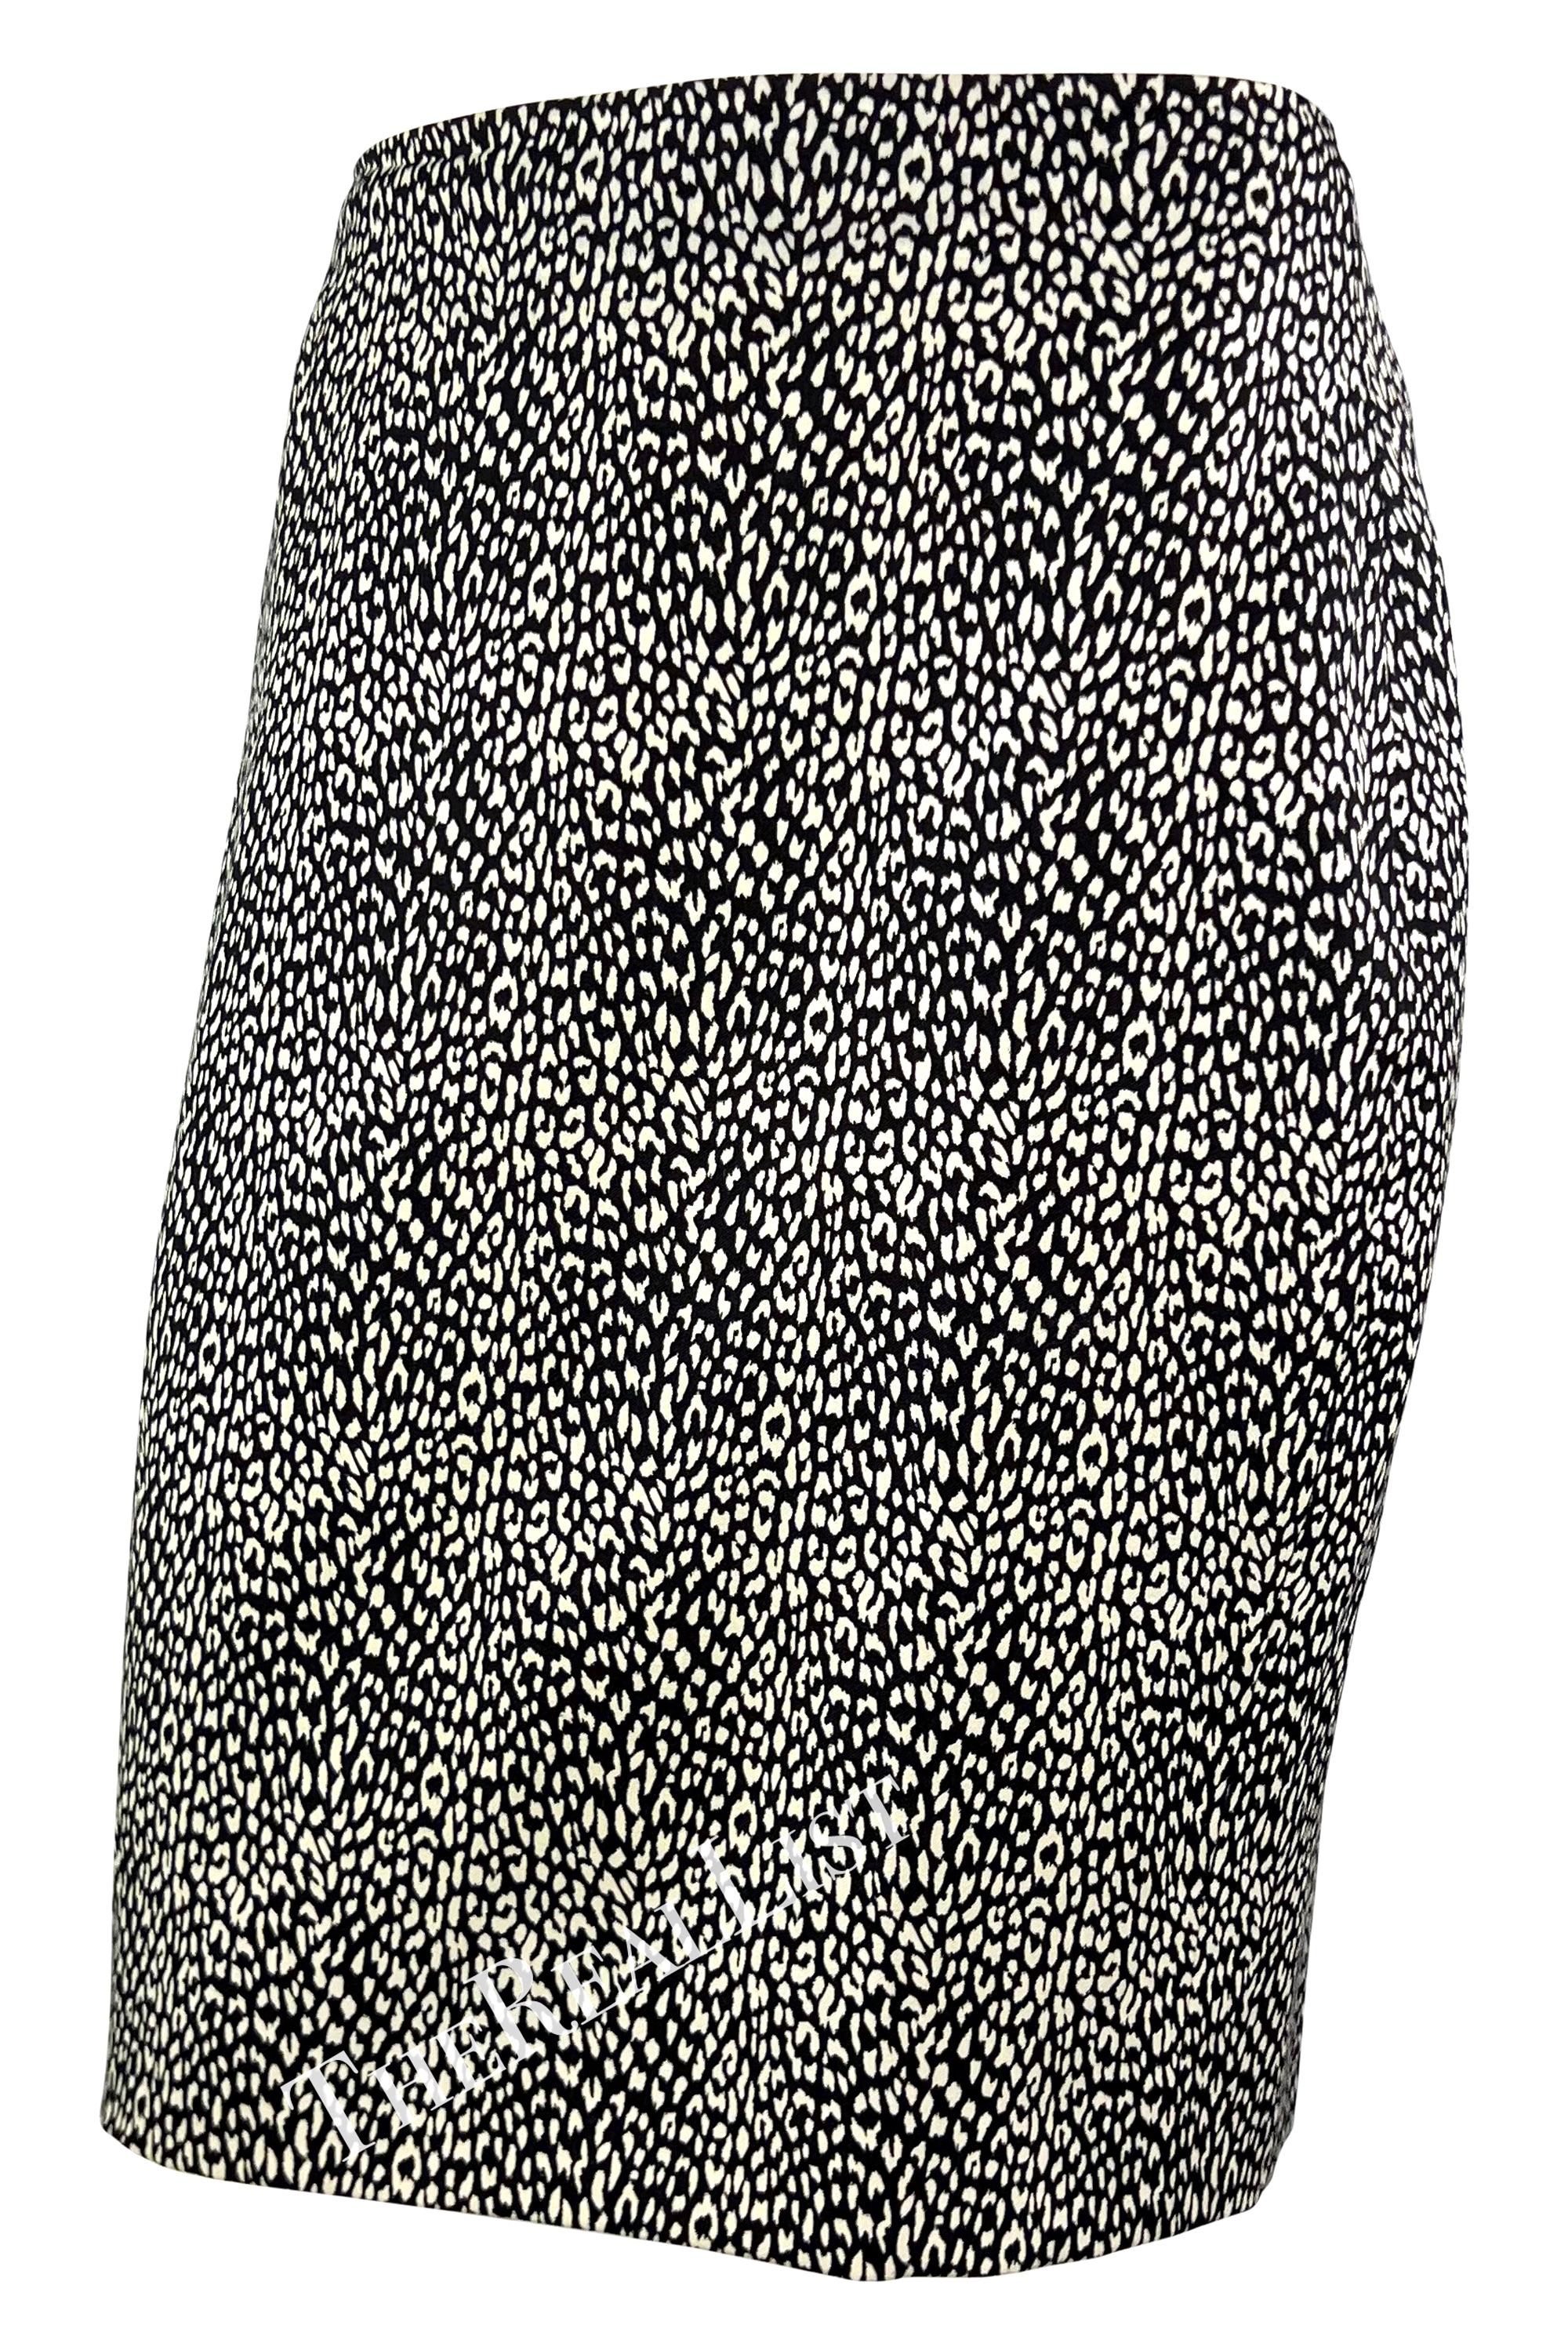 Wir präsentieren einen fabelhaften schwarz-weißen Gianni Versace-Rock mit Gepardenmuster, entworfen von Gianni Versace. Dieser Rock aus der Herbst/Winter-Kollektion 1996, der über dem Knie getragen wird, ist die perfekte, vielseitige Ergänzung für